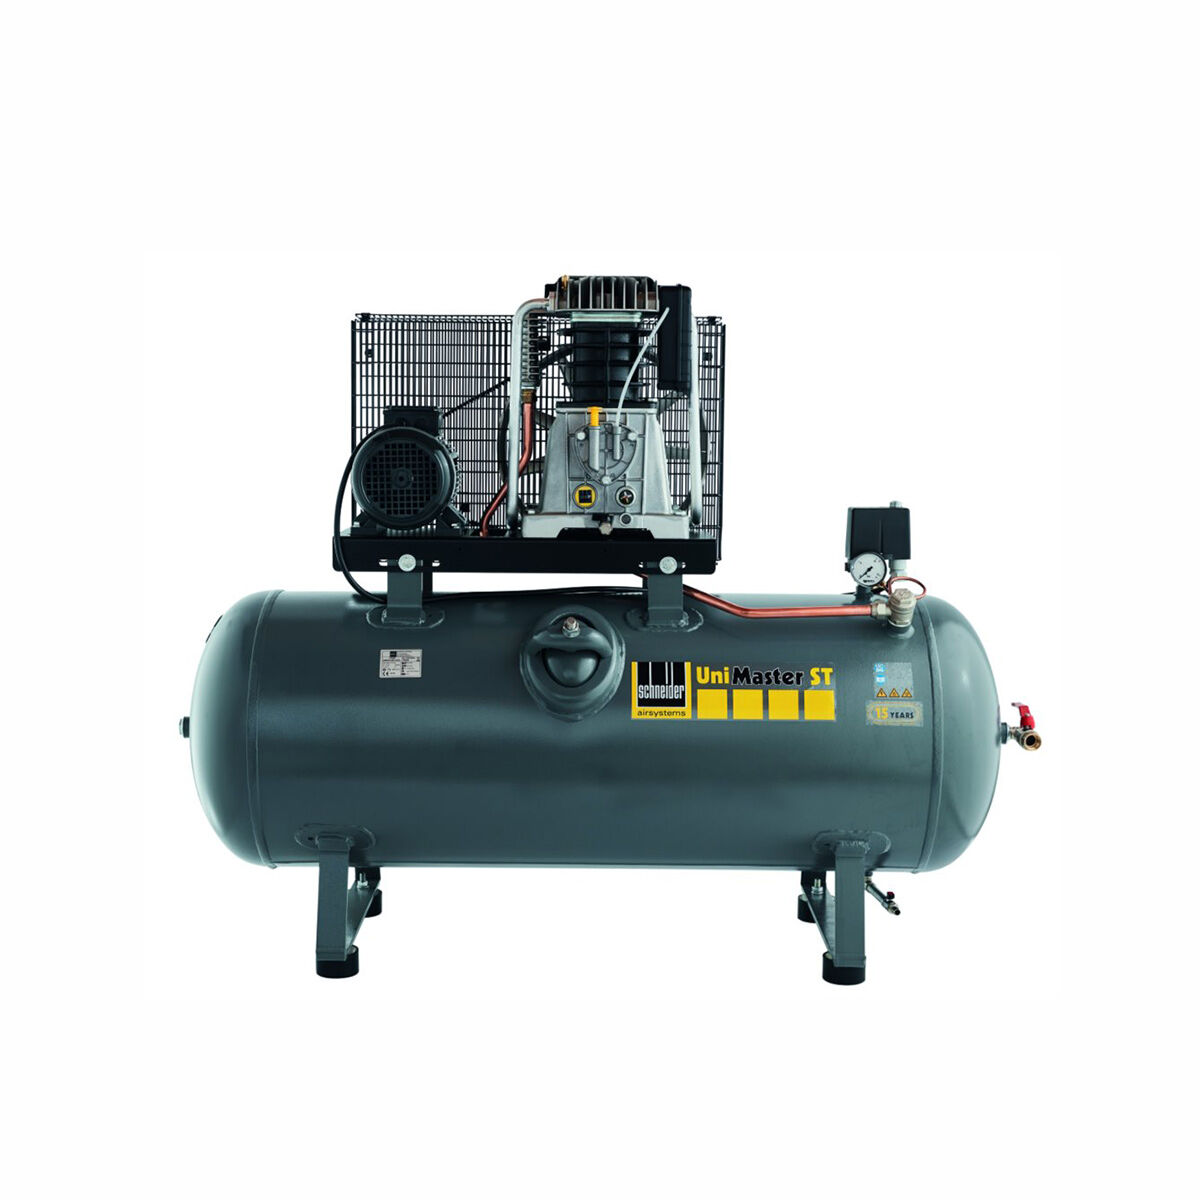 Schneider-Kompressor UNM STL 1250-10-500 C 1121580517